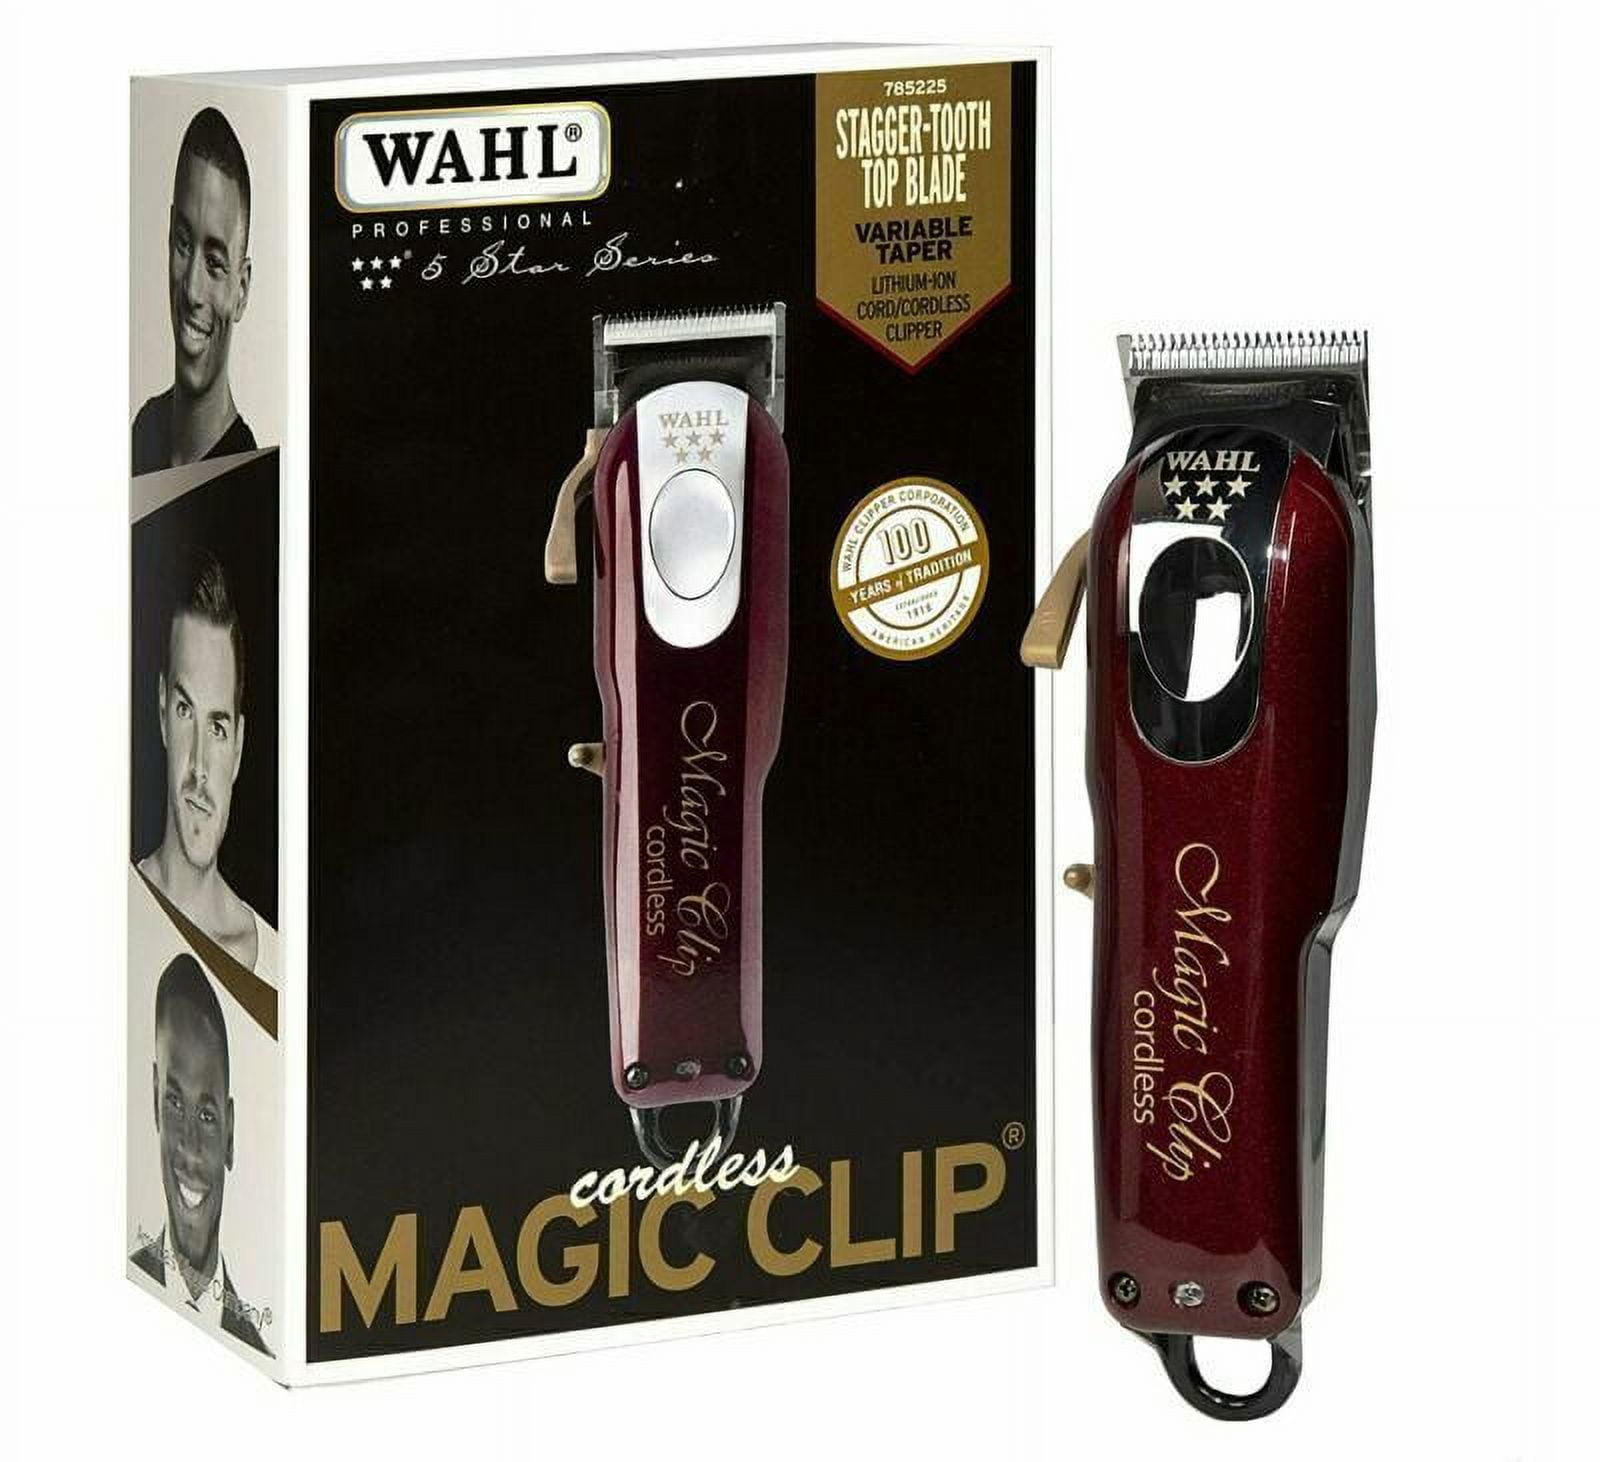 Tondeuse de coupe magic clip cordless WAHL/MOSER